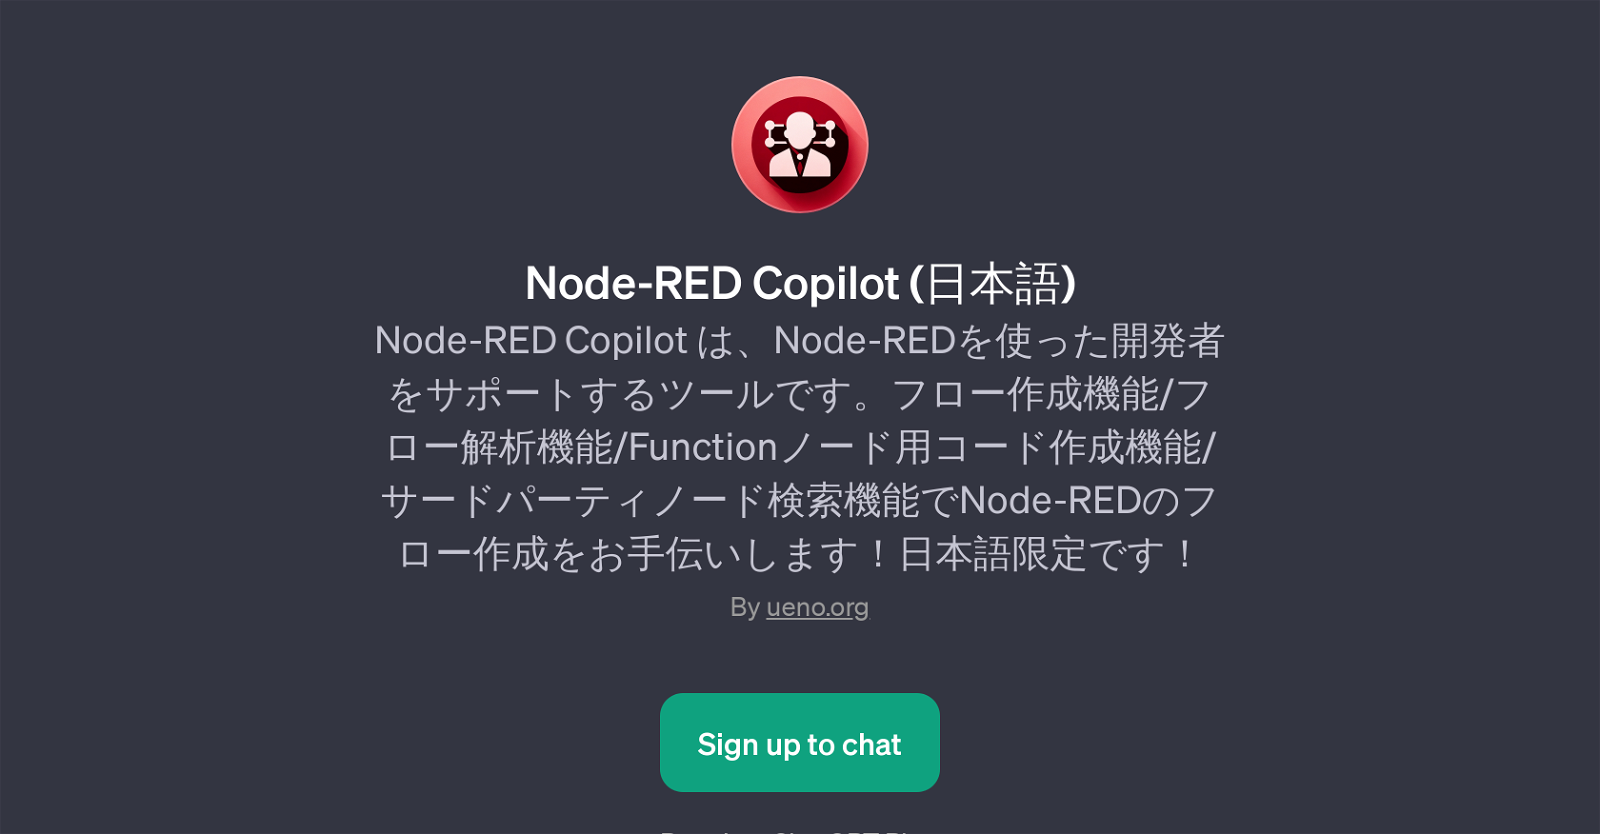 Node-RED Copilot website